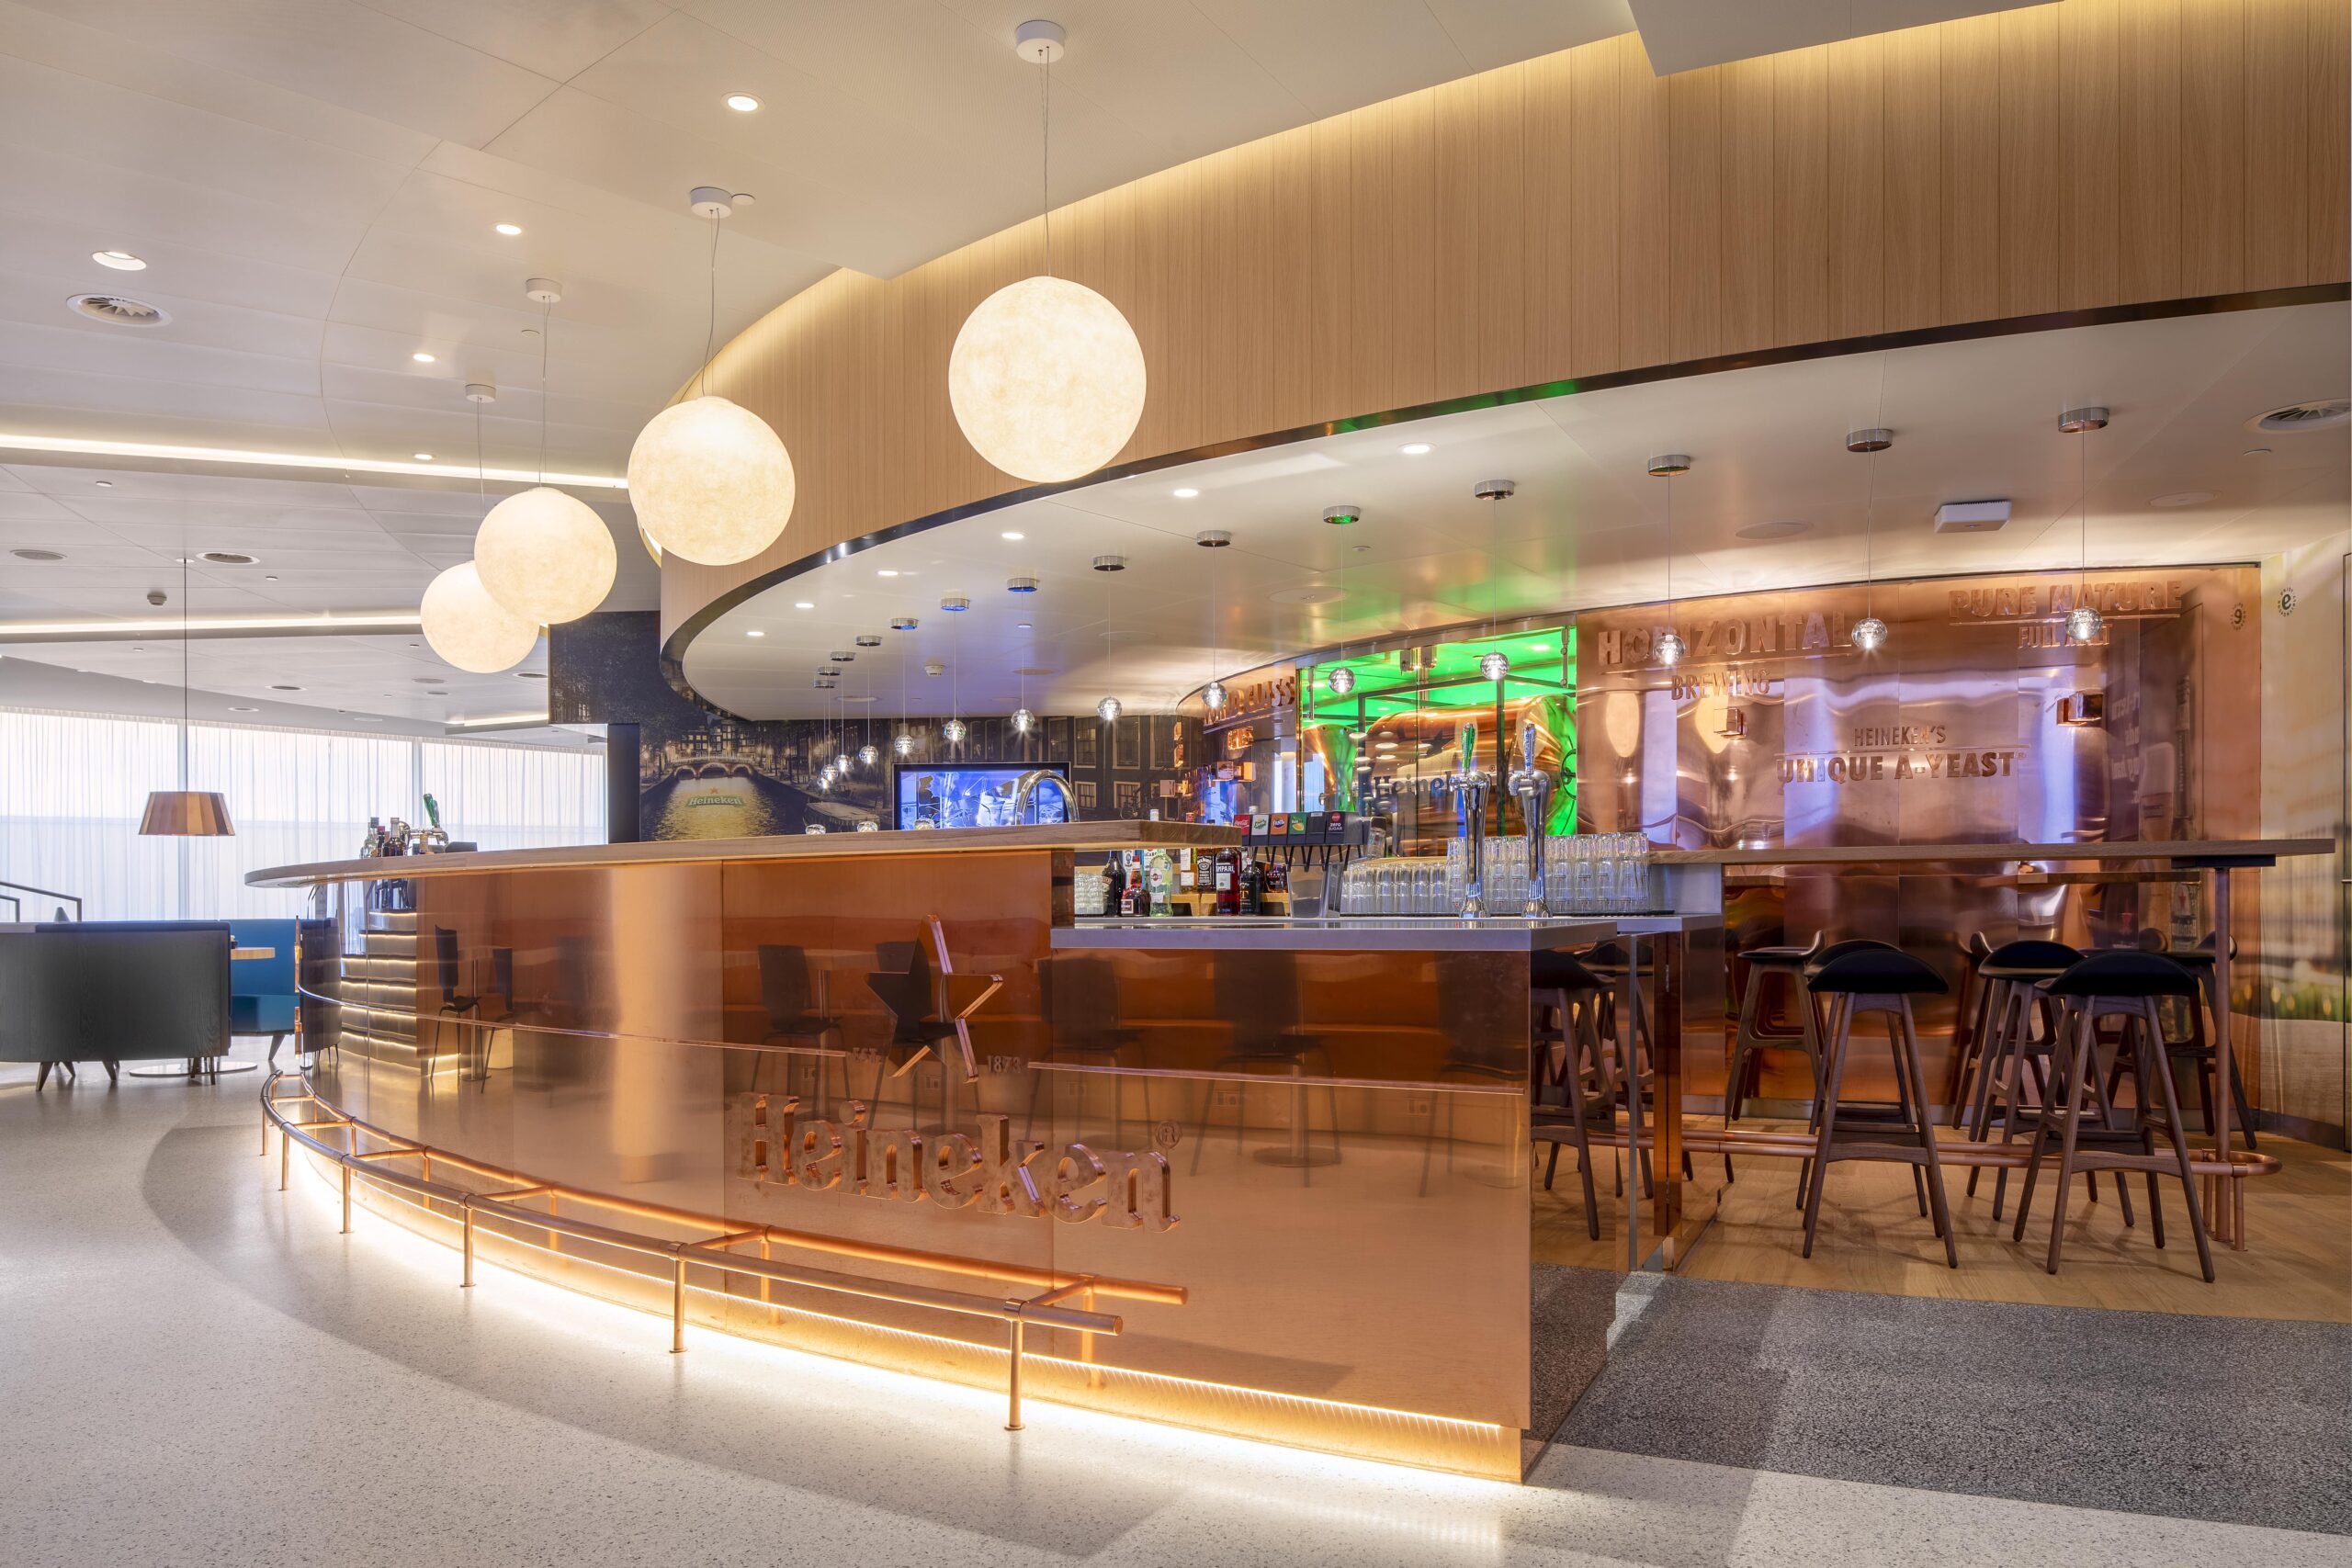 Bar in KLM crown lounge op Schiphol. Met groot Heineken logo en hoge barkrukken. Grote ronde lampen aan het plafond.